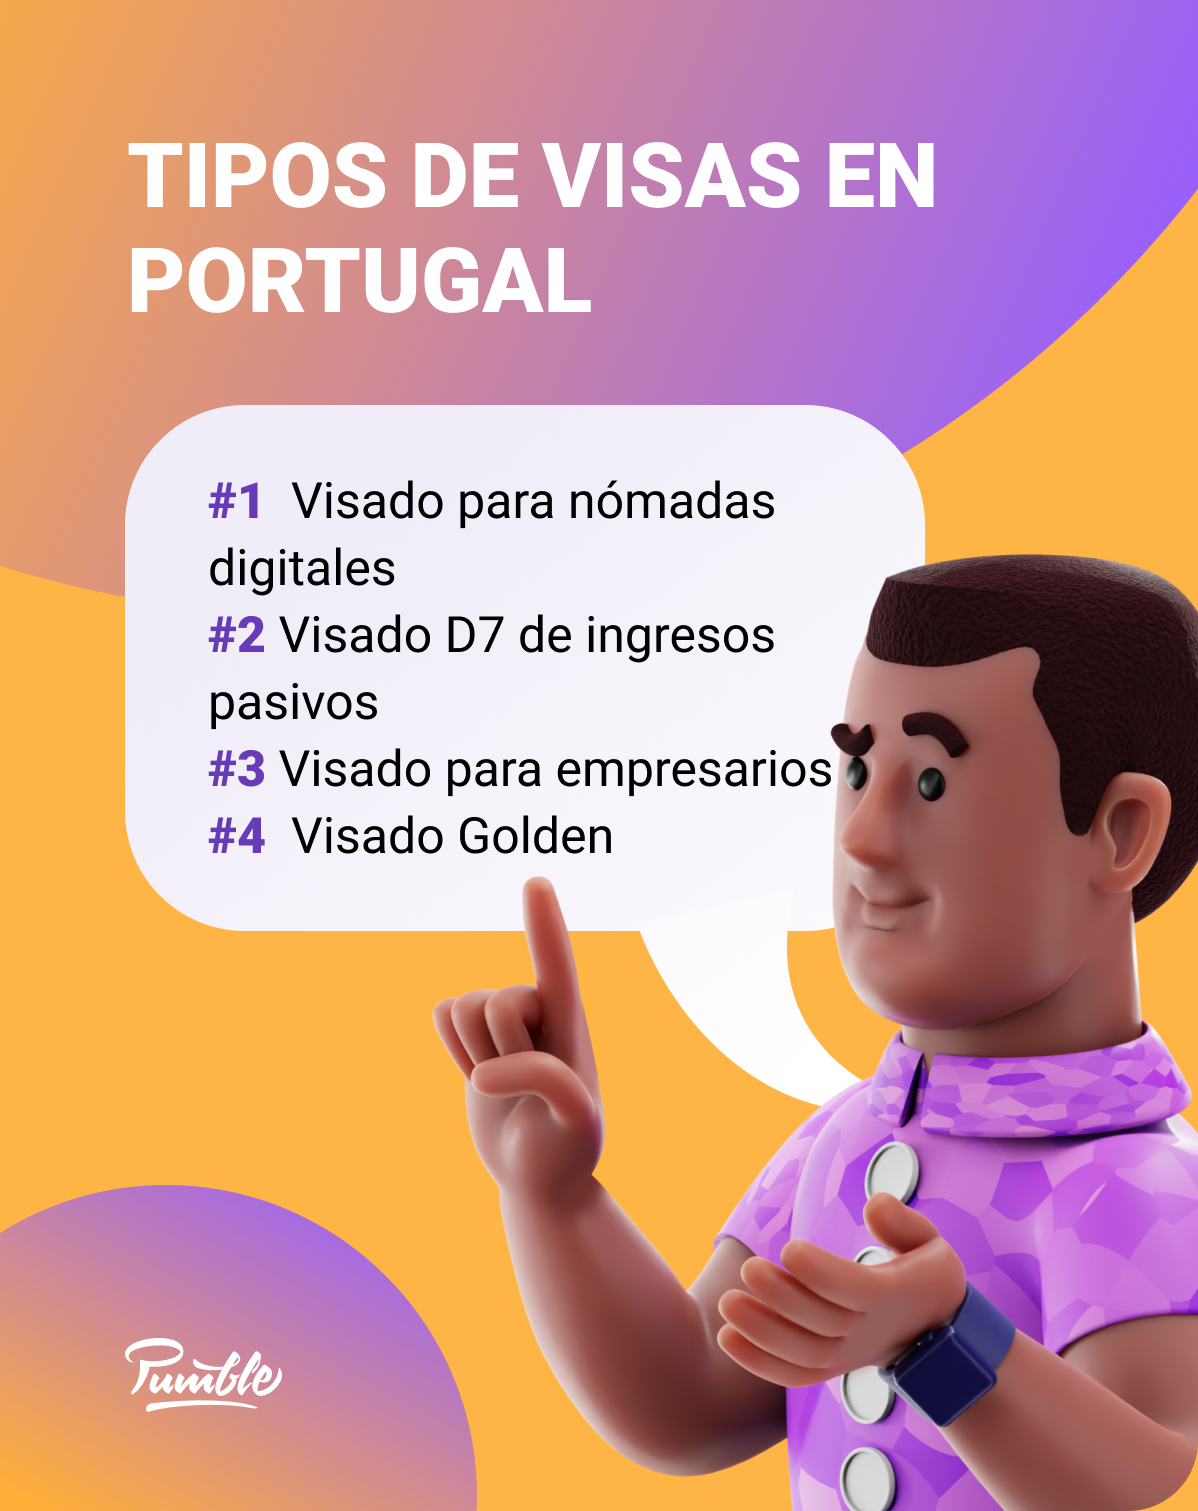 Hay 4 diferentes tipos de visados portugueses que los nómadas digitales pueden solicitar